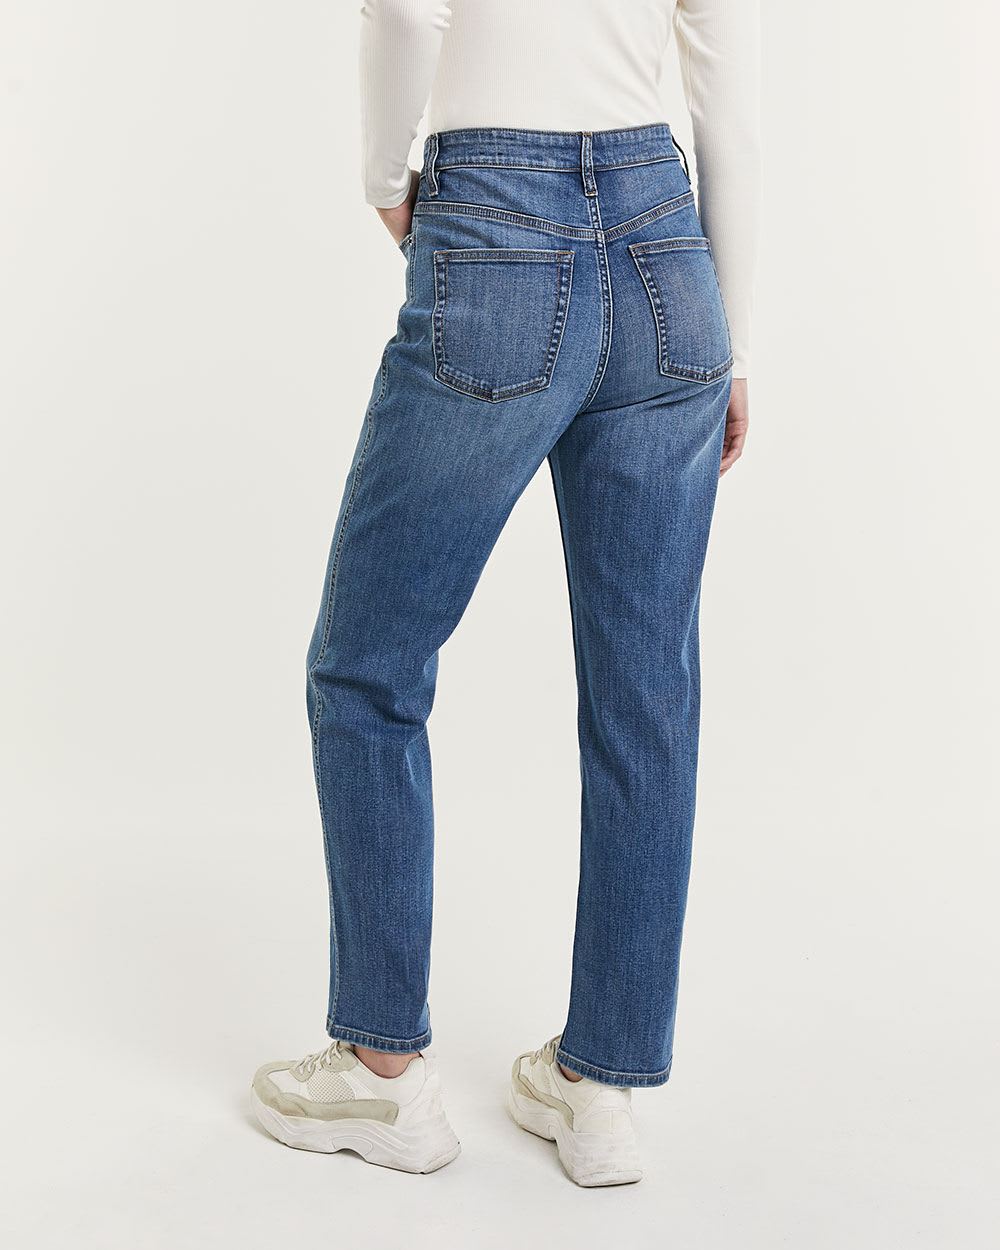 90's Straight Leg Medium Wash Super High Rise Jeans - Tall